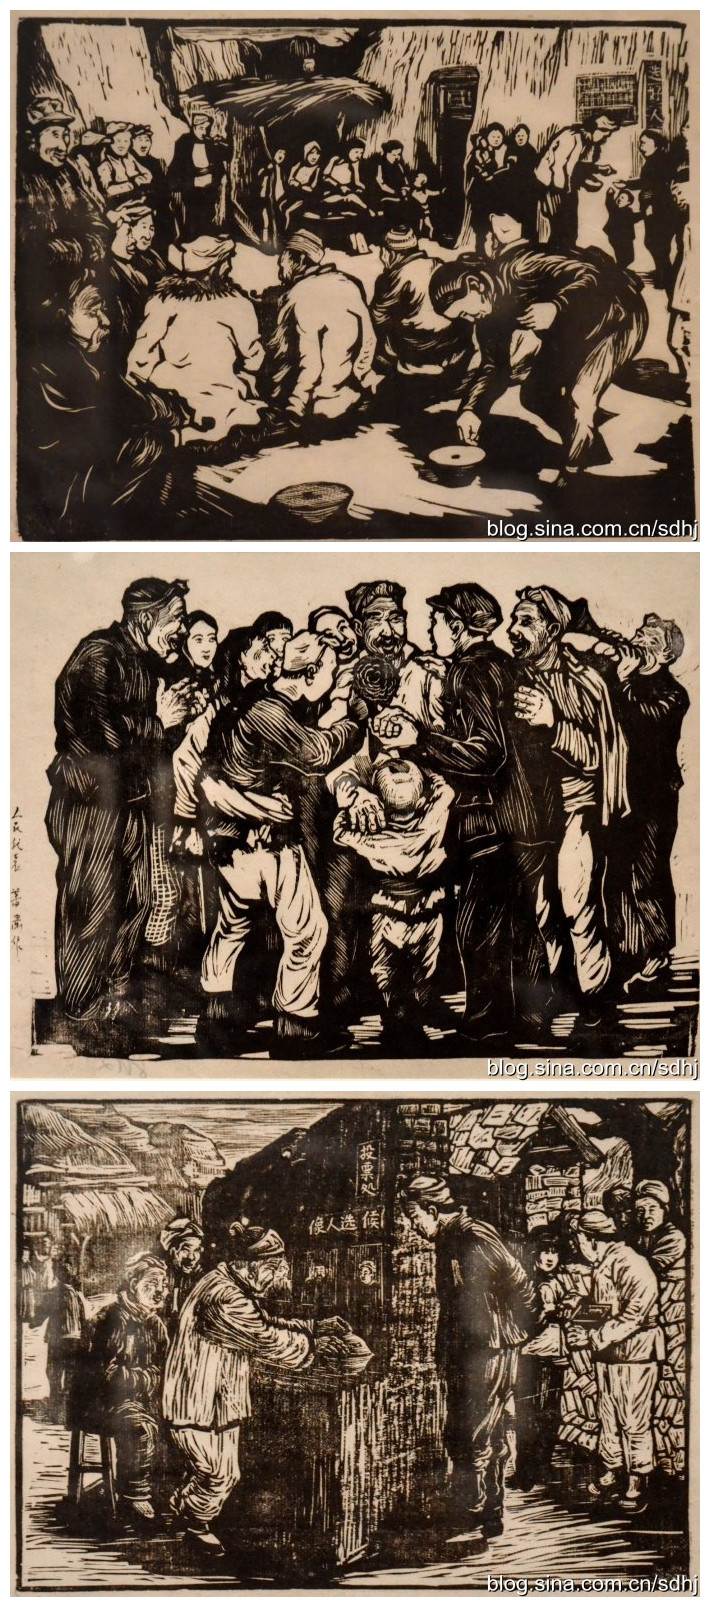 纪念抗日战争胜利70周年馆藏文物系列展之抗战木刻展 (45)